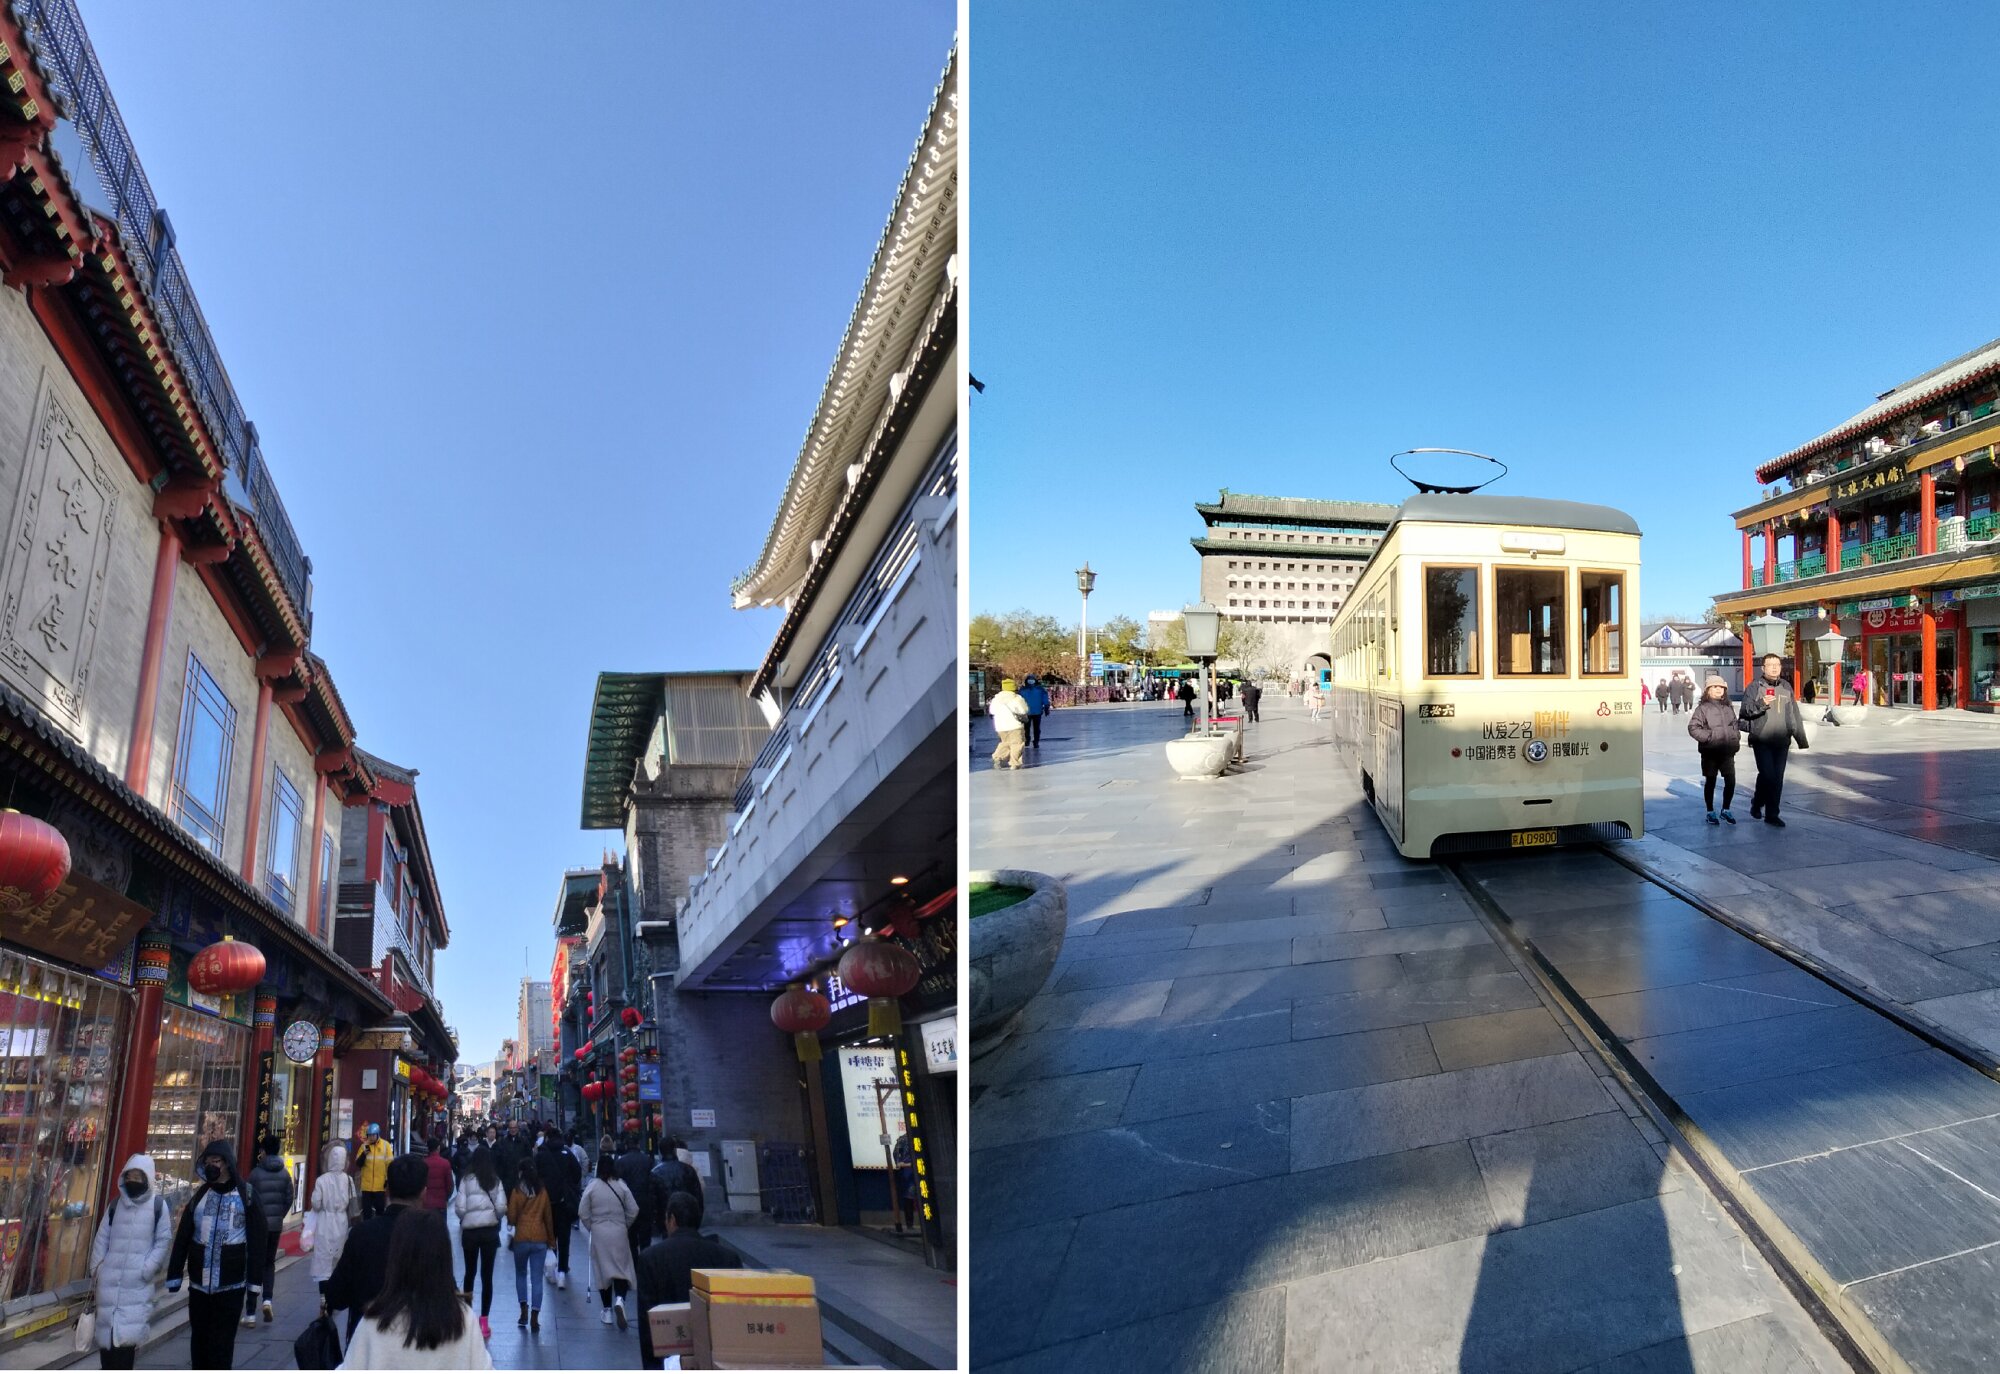 大柵欄は、北京でも有数の商店街。数多くの商店や飲食店が並び、多くの観光客で賑わっている。路面電車は再現された電動車。（撮影・筆者）